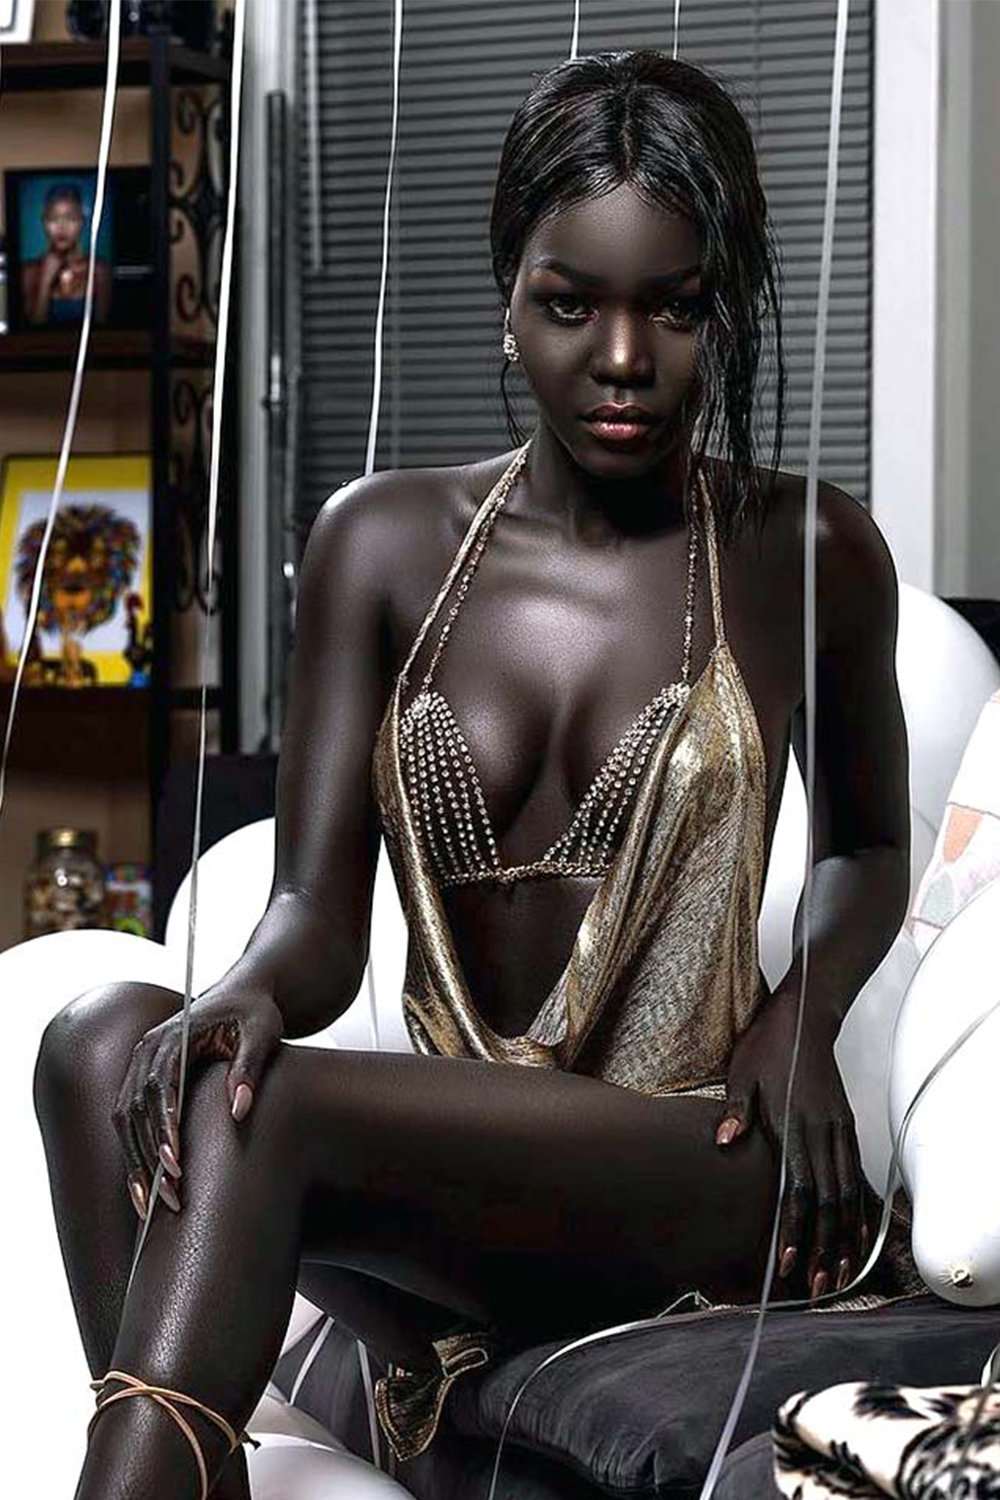 Текущие негритянки. Няким Гатвеч. Нуаким Гатвеч модель из Южного Судана. Королева тьмы модель из Южного Судана Ньяким. Nyakim Gatwech (Ньяким Гатвеч) - 24-летняя модель.